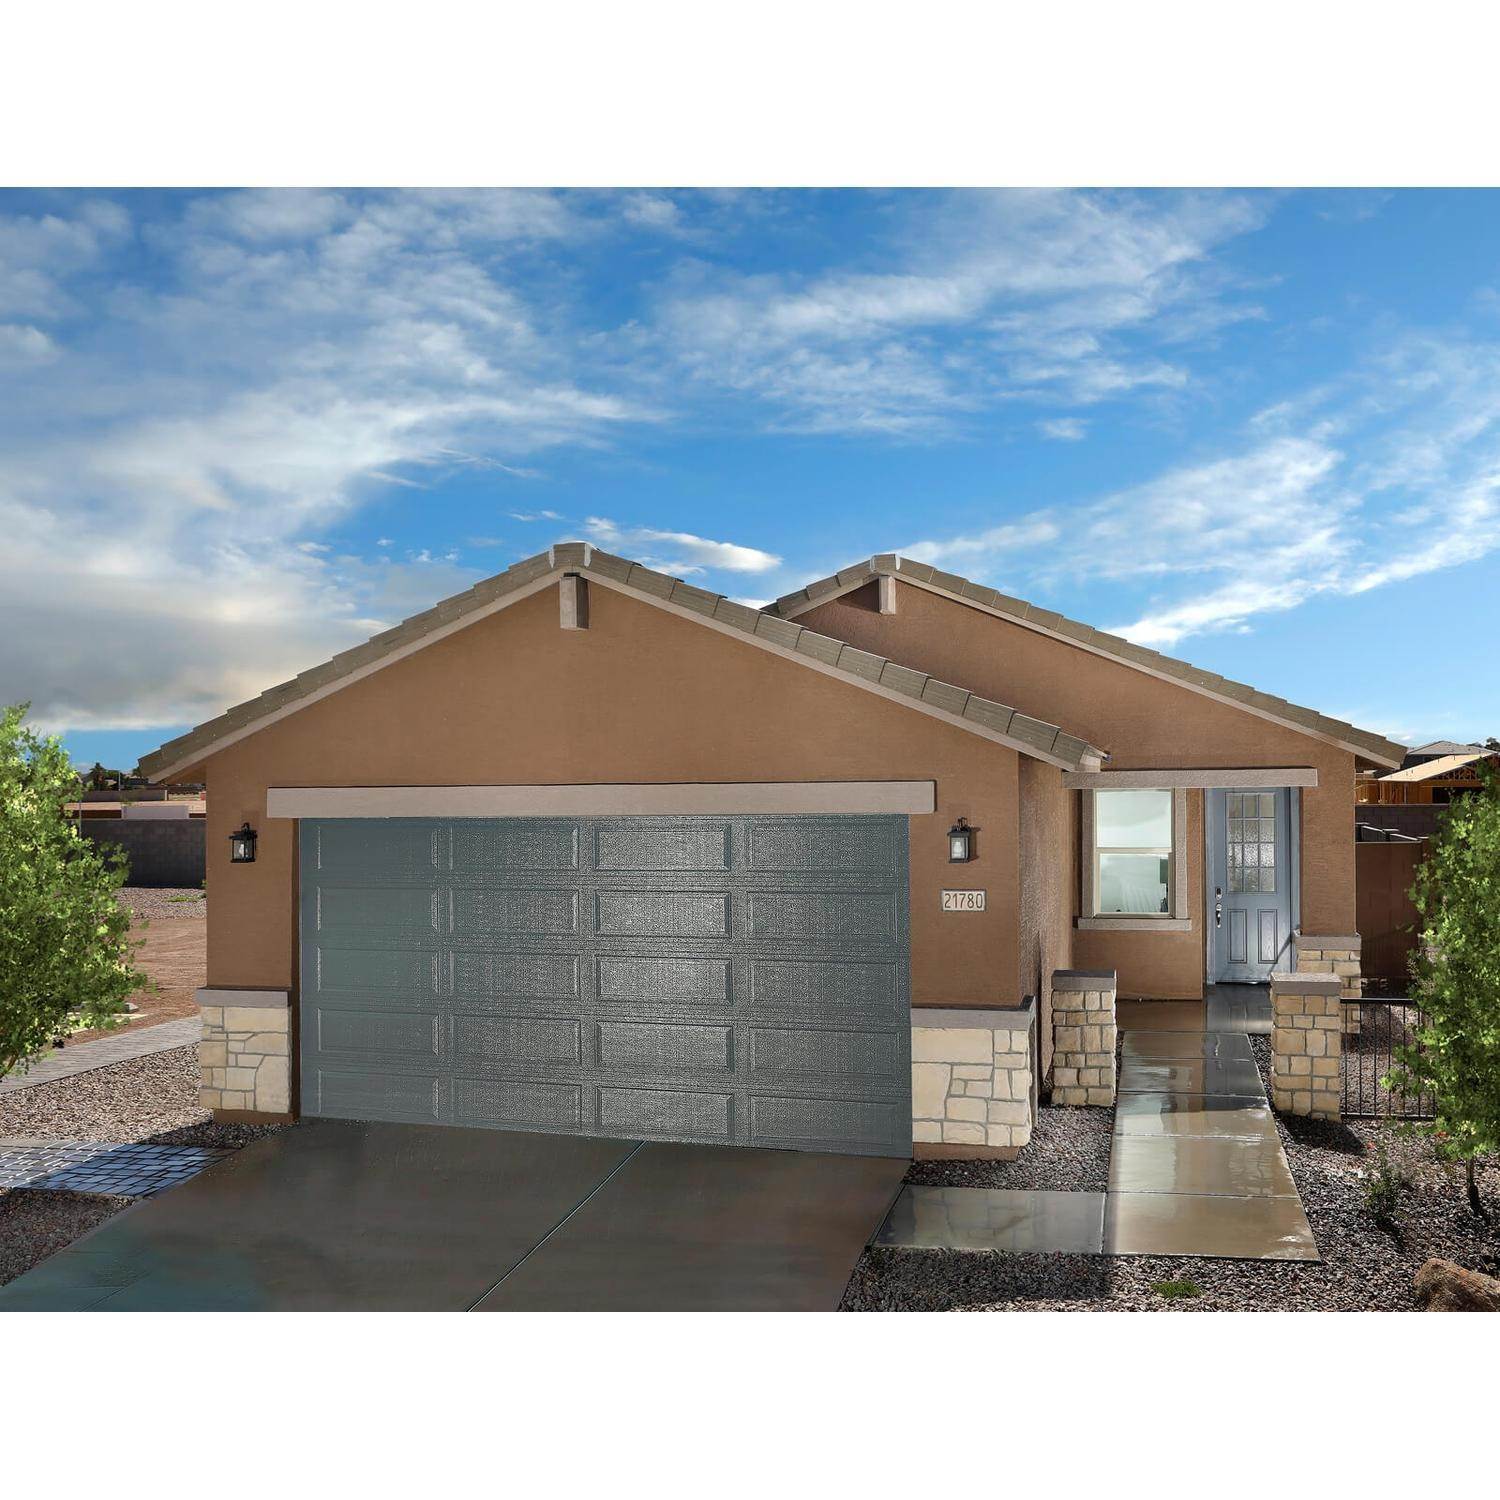 13. Villas at The Lakes at Rancho El Dorado building at 21780 N Lynn Street, Maricopa, AZ 85138